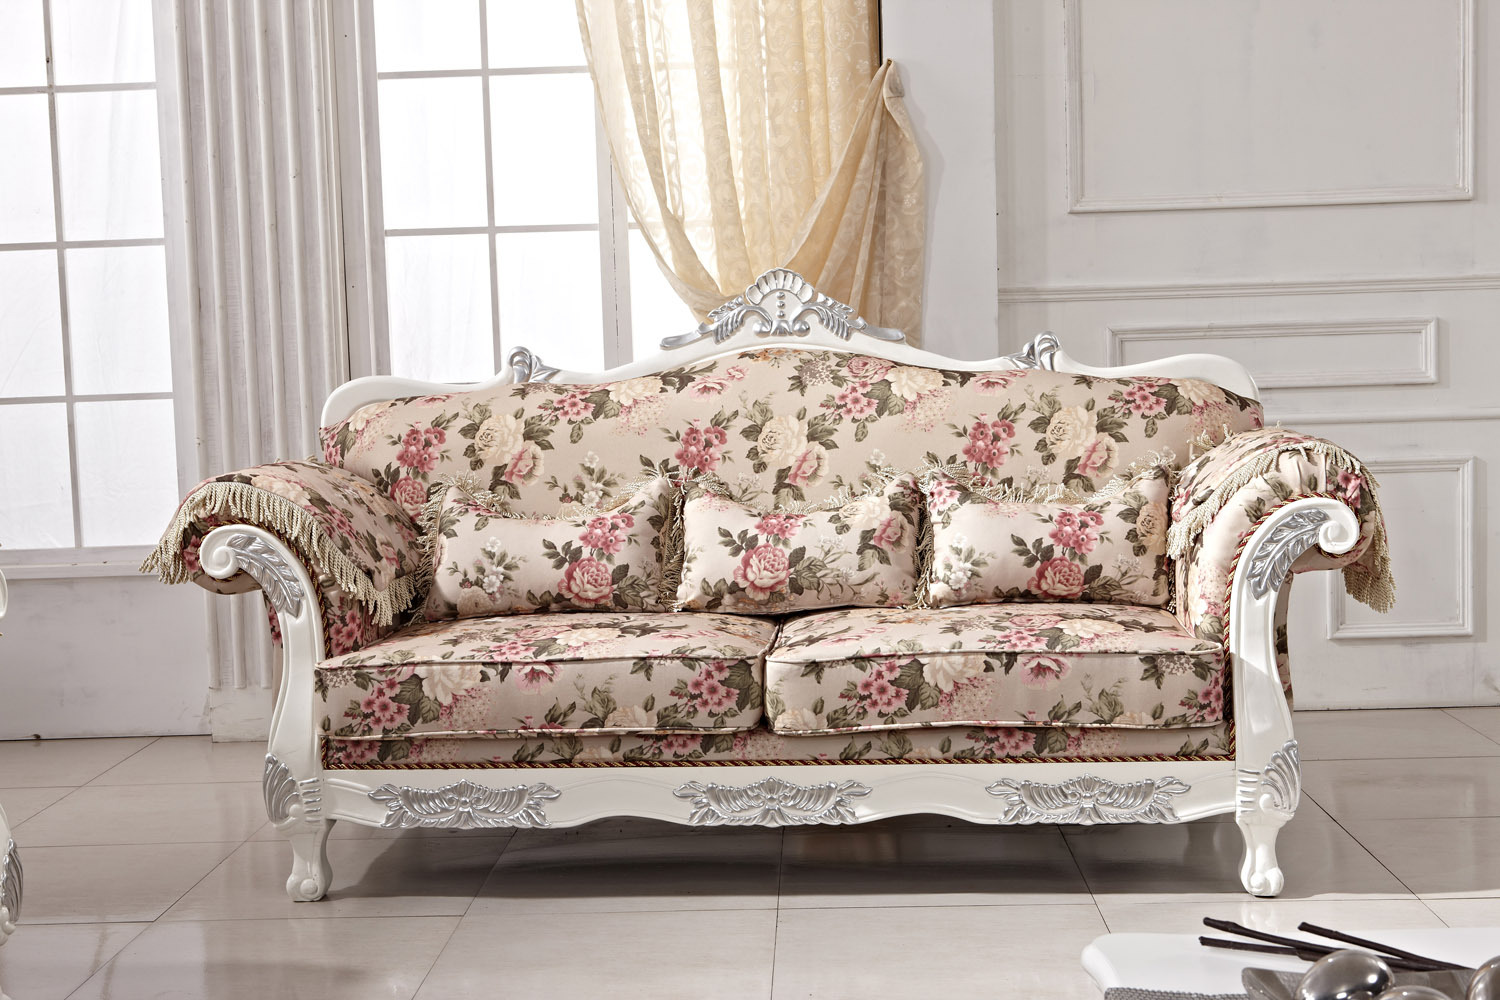 热销欧式布艺沙发组合 欧美宫廷布艺沙发 舒适懒人沙发 欧式家具